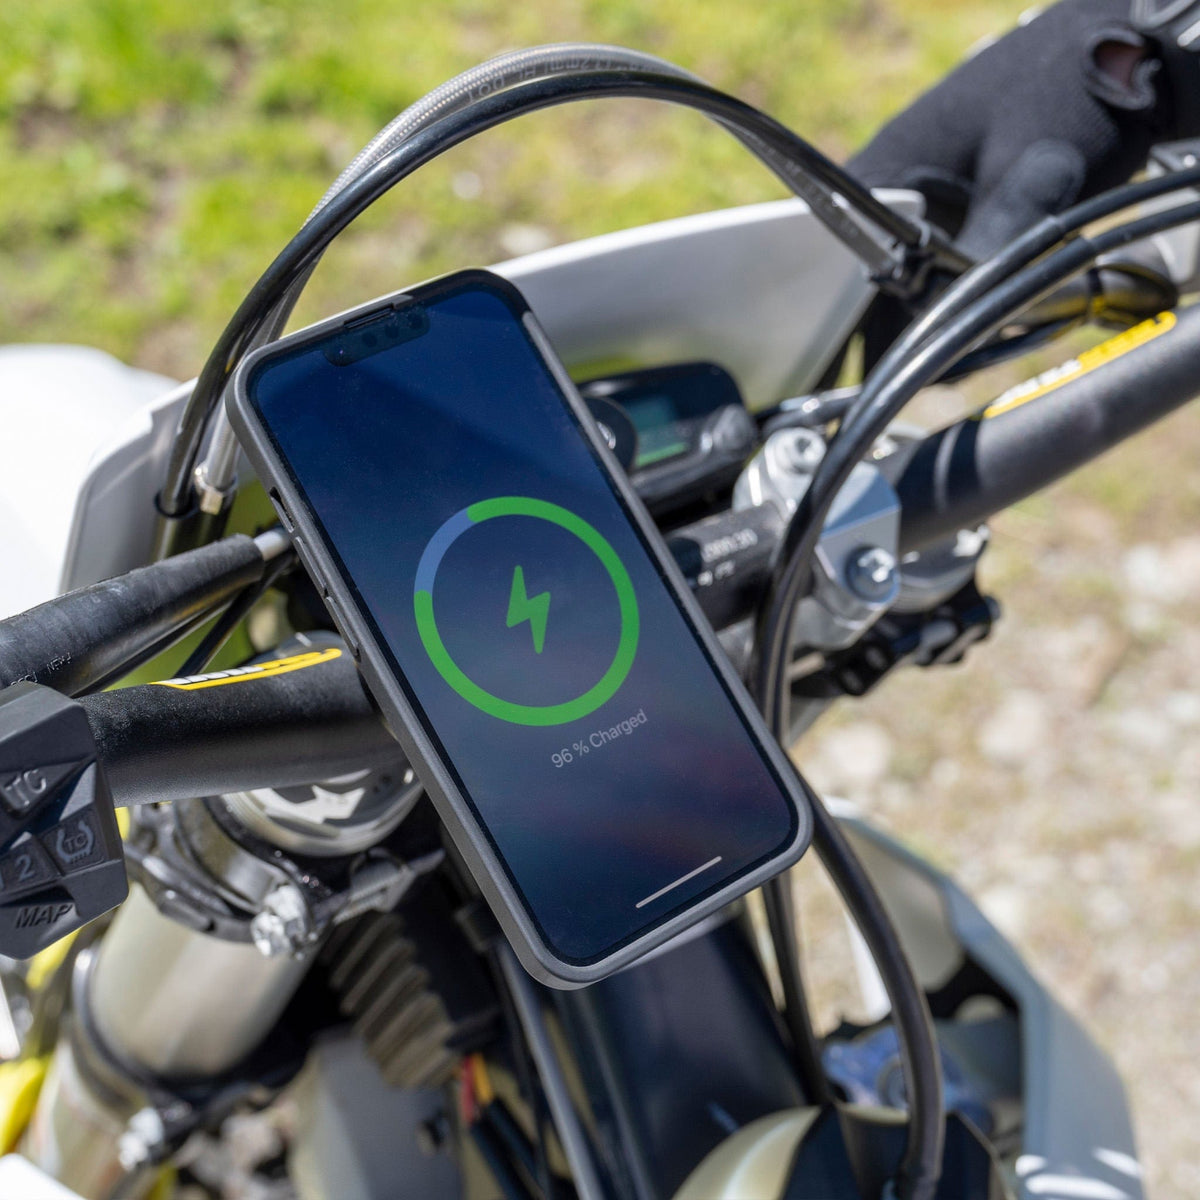 Telefon halter Vibrations dämpfer Motorrad Handy halter